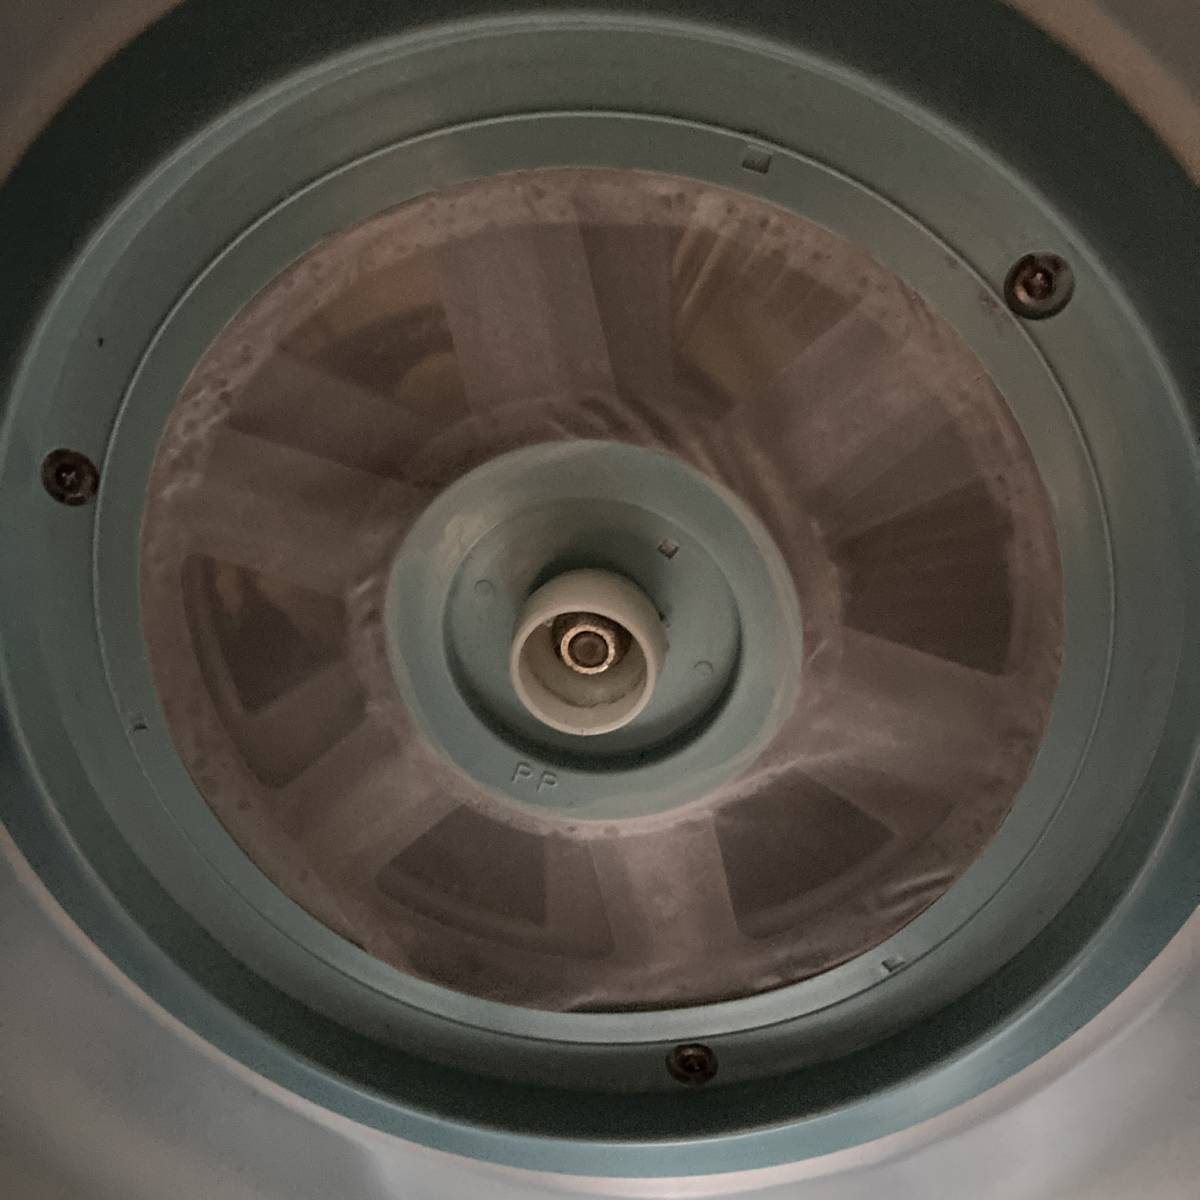 2017年製TOSHIBA 衣類乾燥機 ED-45C 乾燥容量4.5kg ドラム式 ピュア